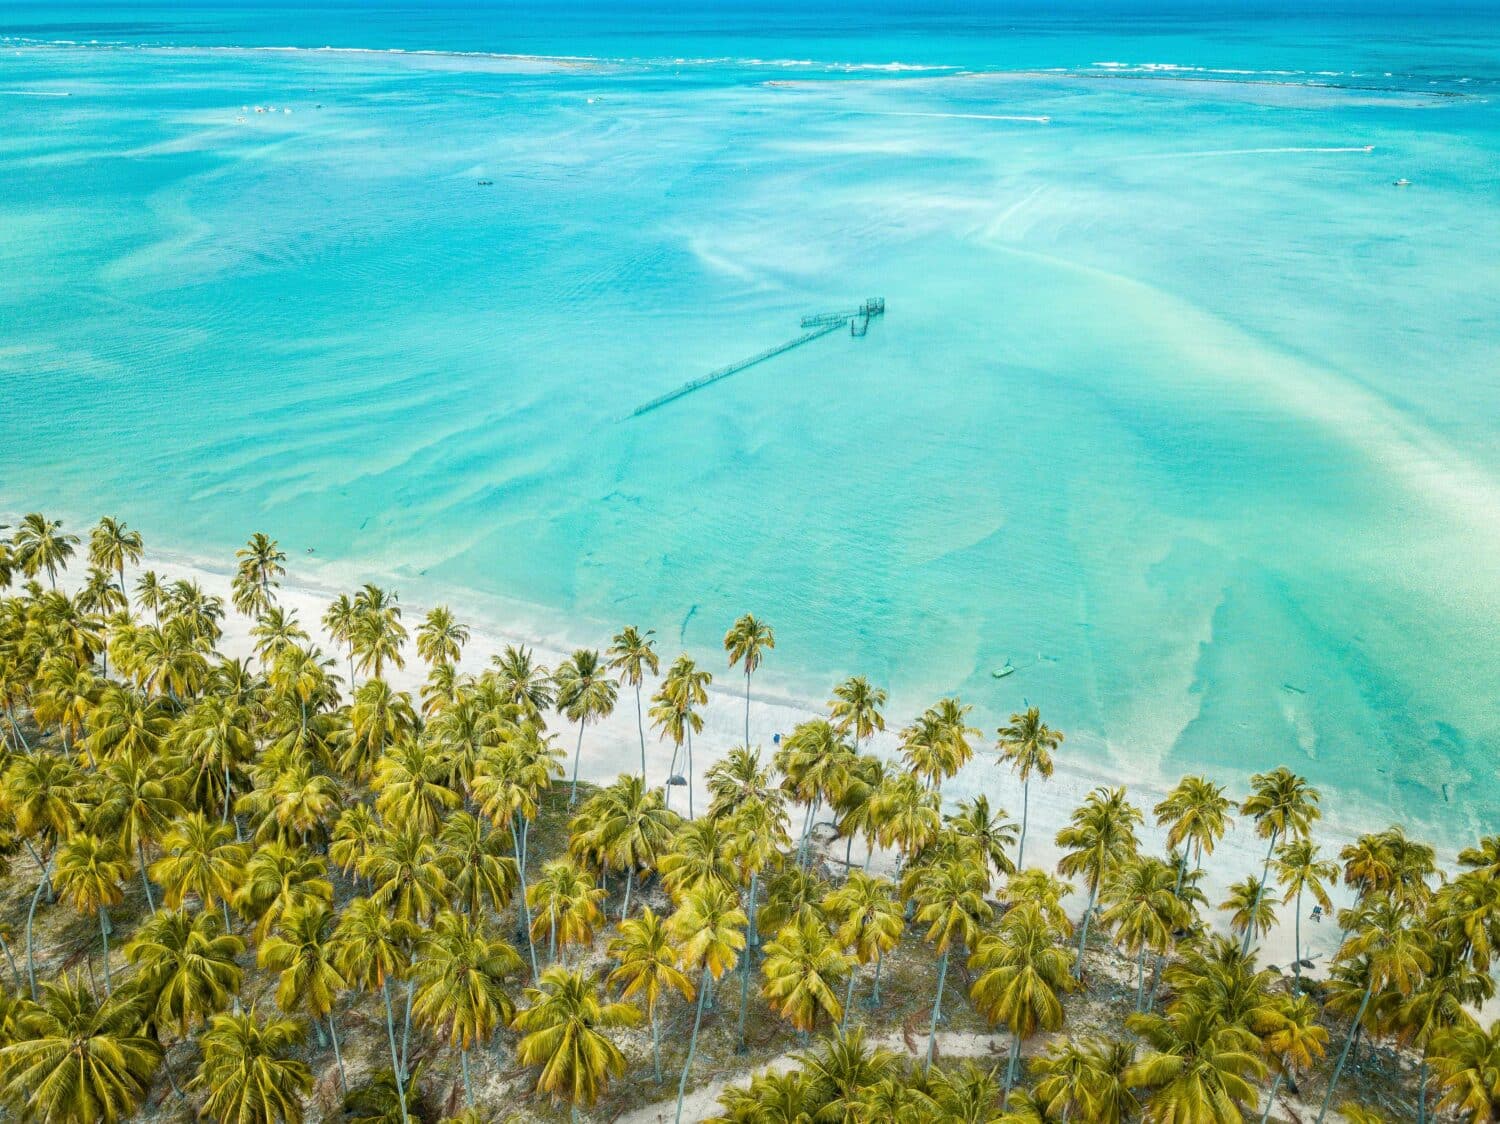 Vista aérea da praia de Maragogi, uma das melhores praias de Maceió. Na imagem, há coqueiros na costa, com uma faixa de areia branca e mar transparente. Está um dia ensolarado